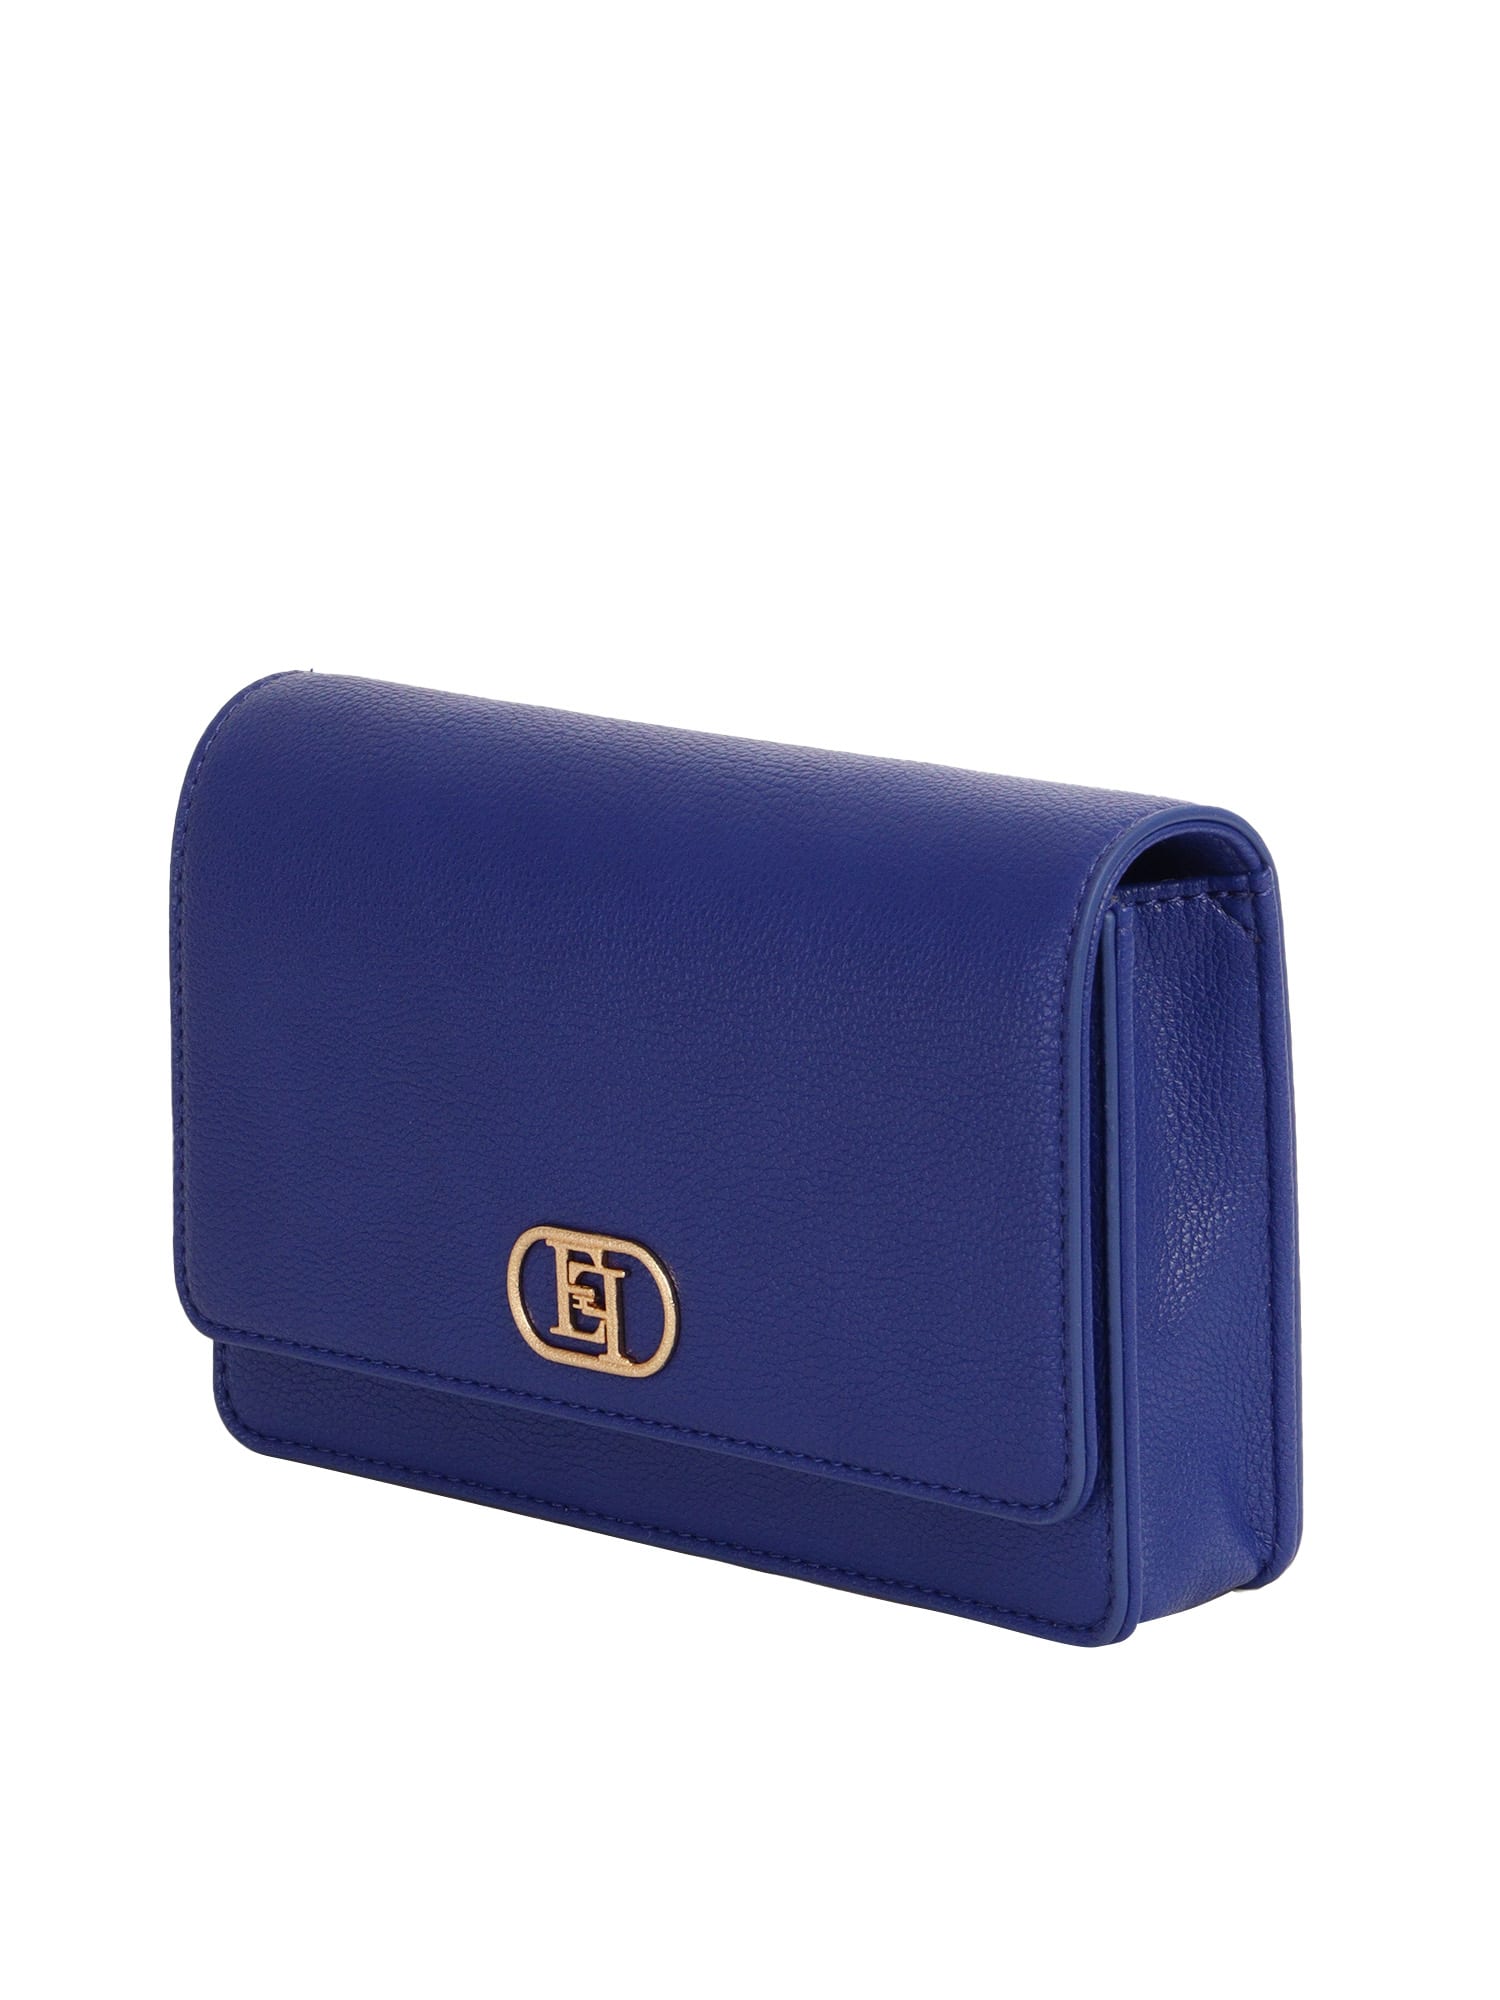 Shop Elisabetta Franchi Blue Shoulder Bag